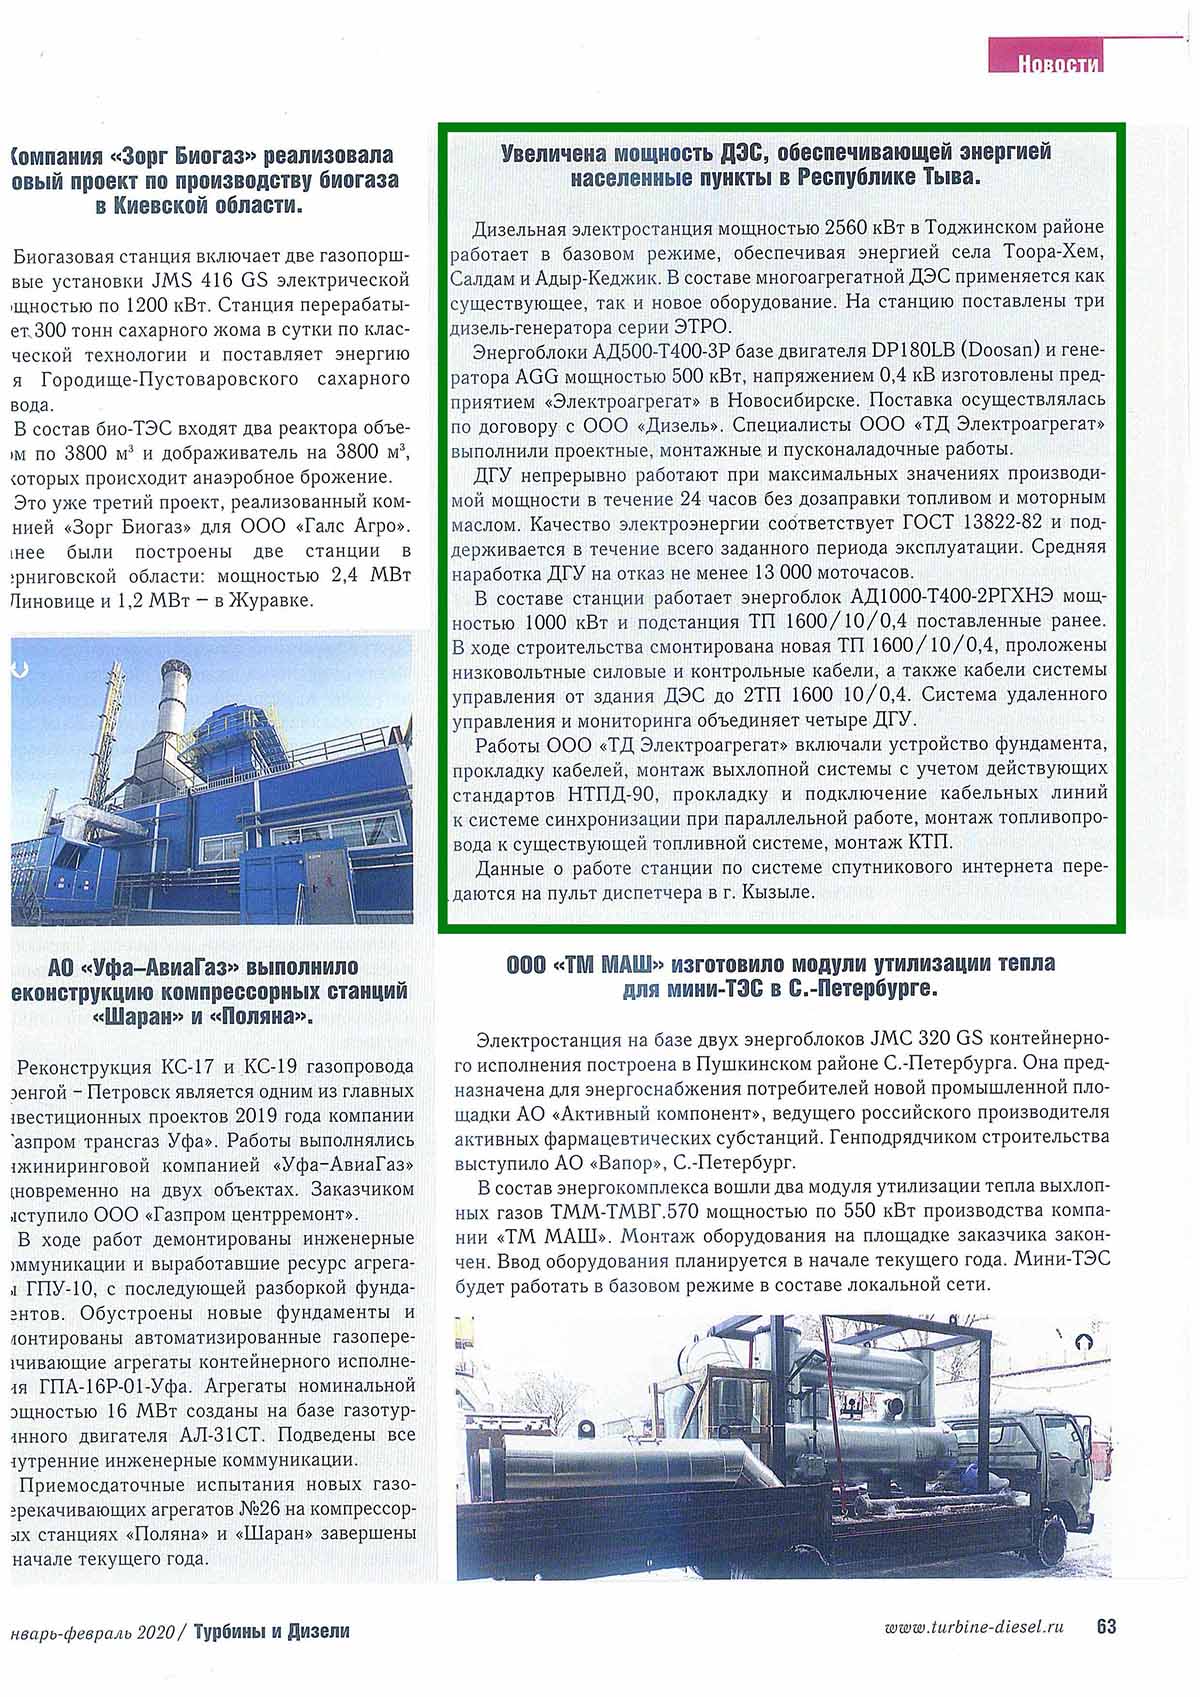 Статья. посвященная вводу в эксплуатацию энергокомплекса 1,5 МВт в Тоджинском районе Республика Тыва